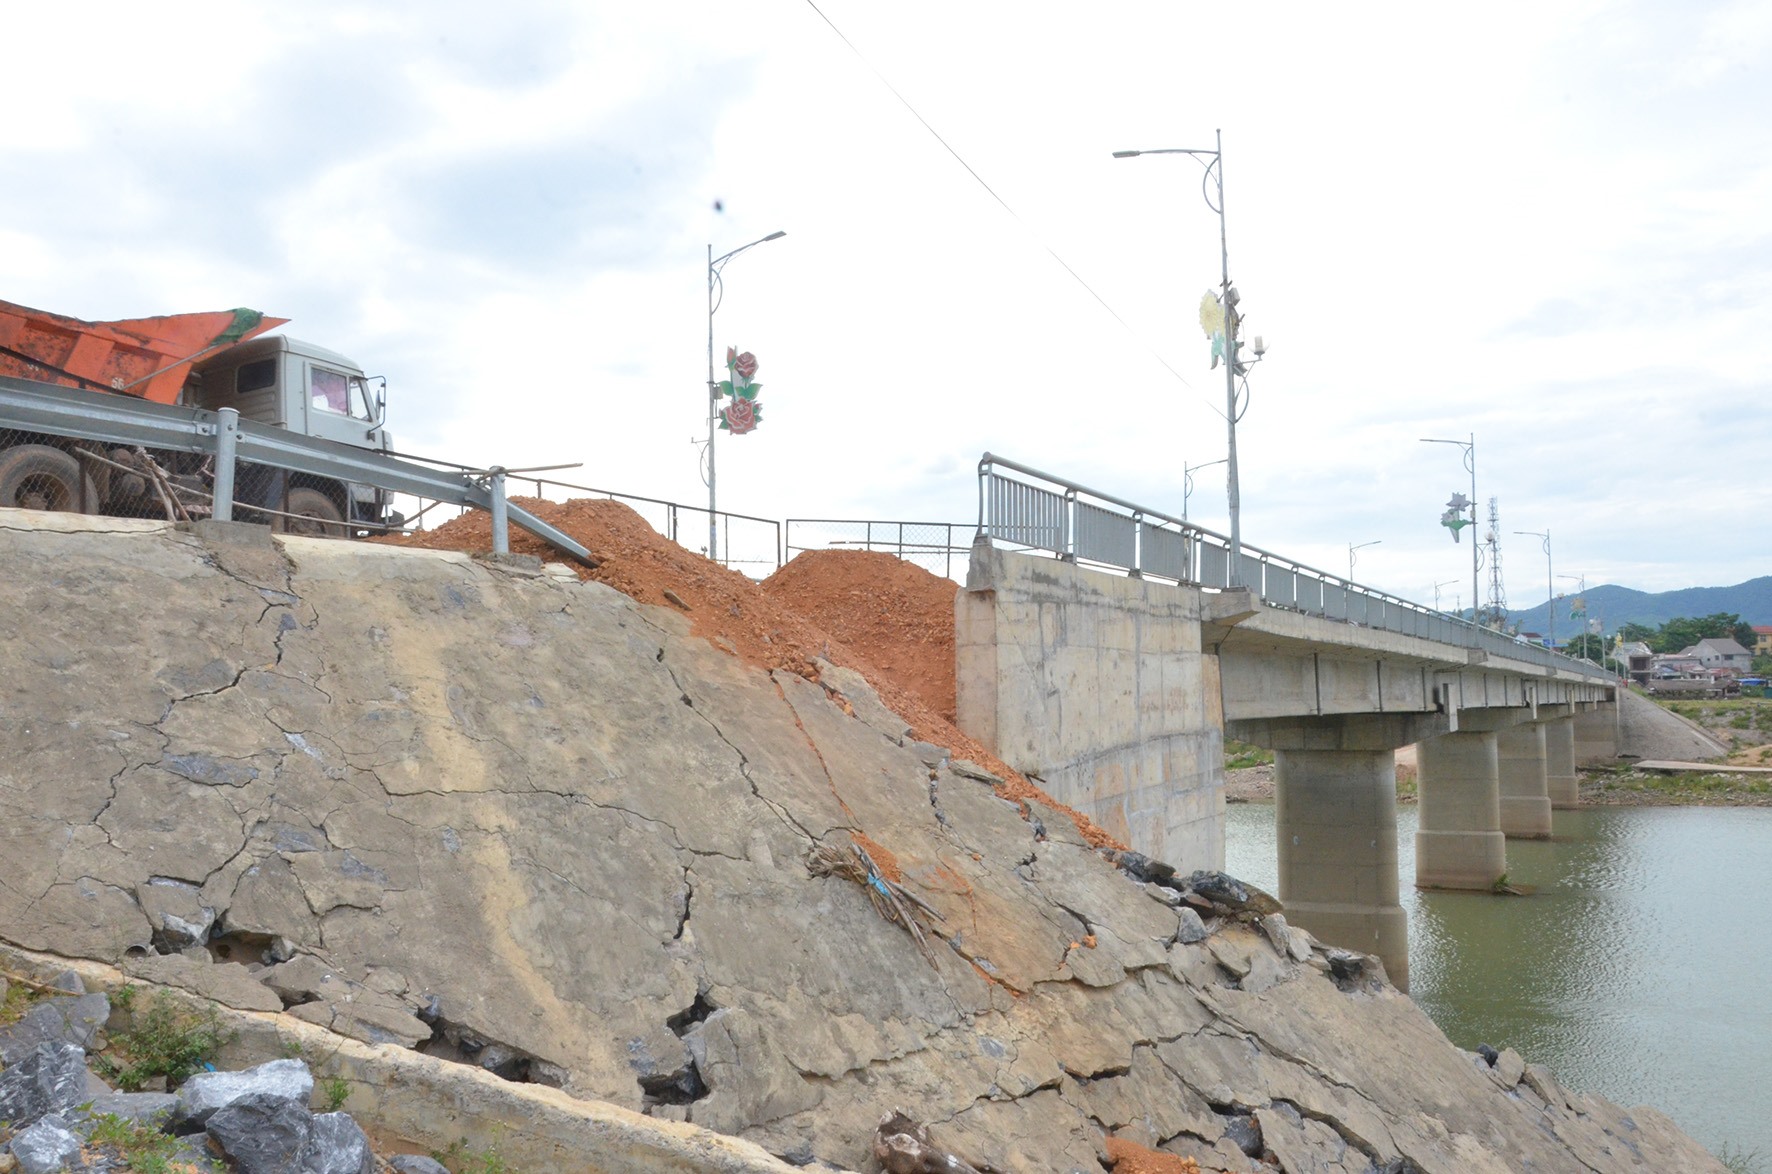 Mố cầu vượt sông Đakrông tại thị trấn Krông Klang bị sạt lở, xuống cấp khi chưa nghiệm thu, bàn giao công trình - Ảnh: L.M